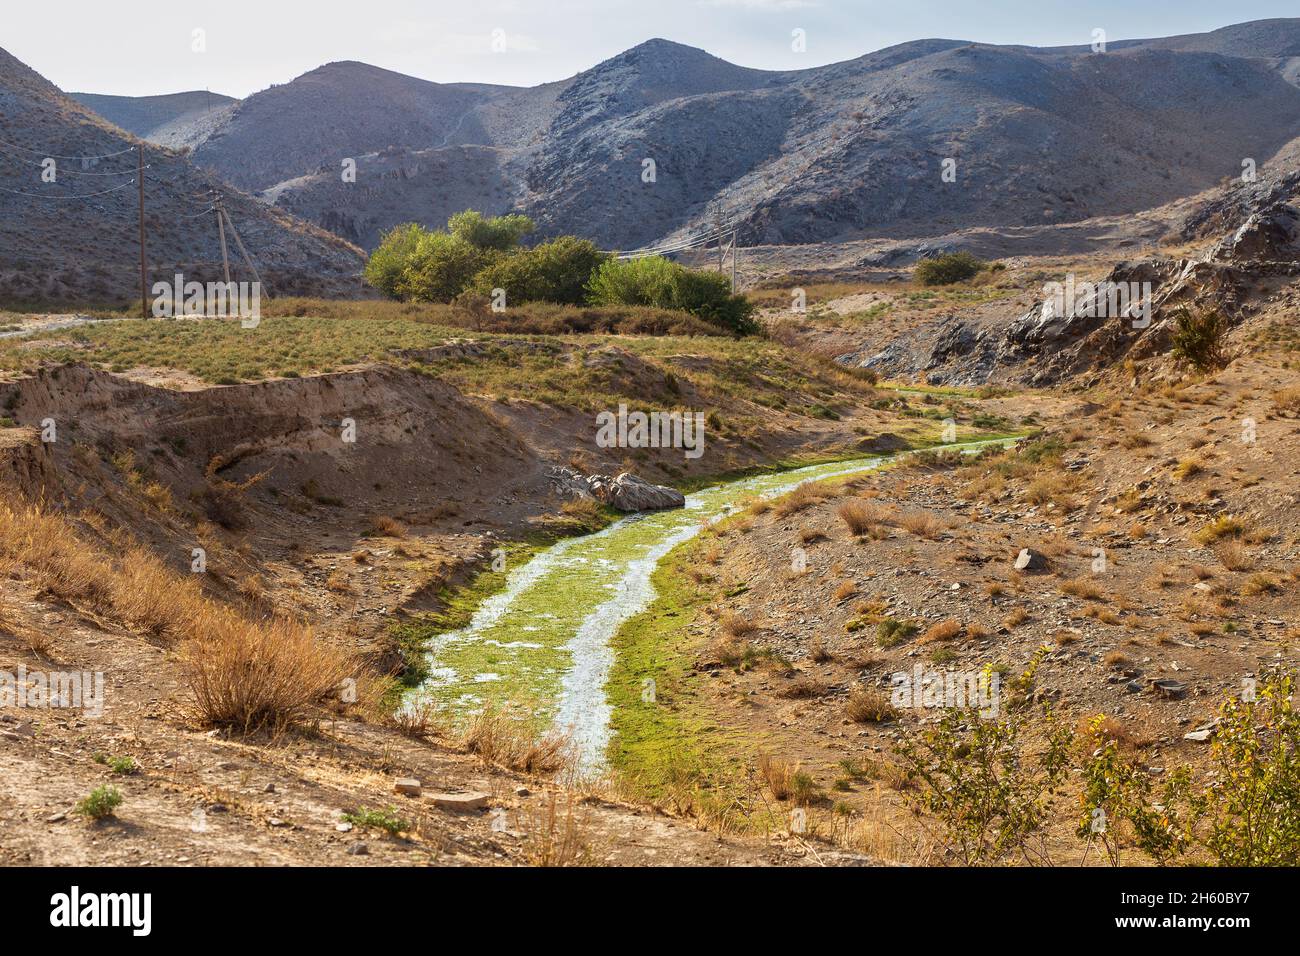 Autumn mountain landscape. A shallow stream in the Sarmysh gorge, Nuratau mountain range, Uzbekistan Stock Photo